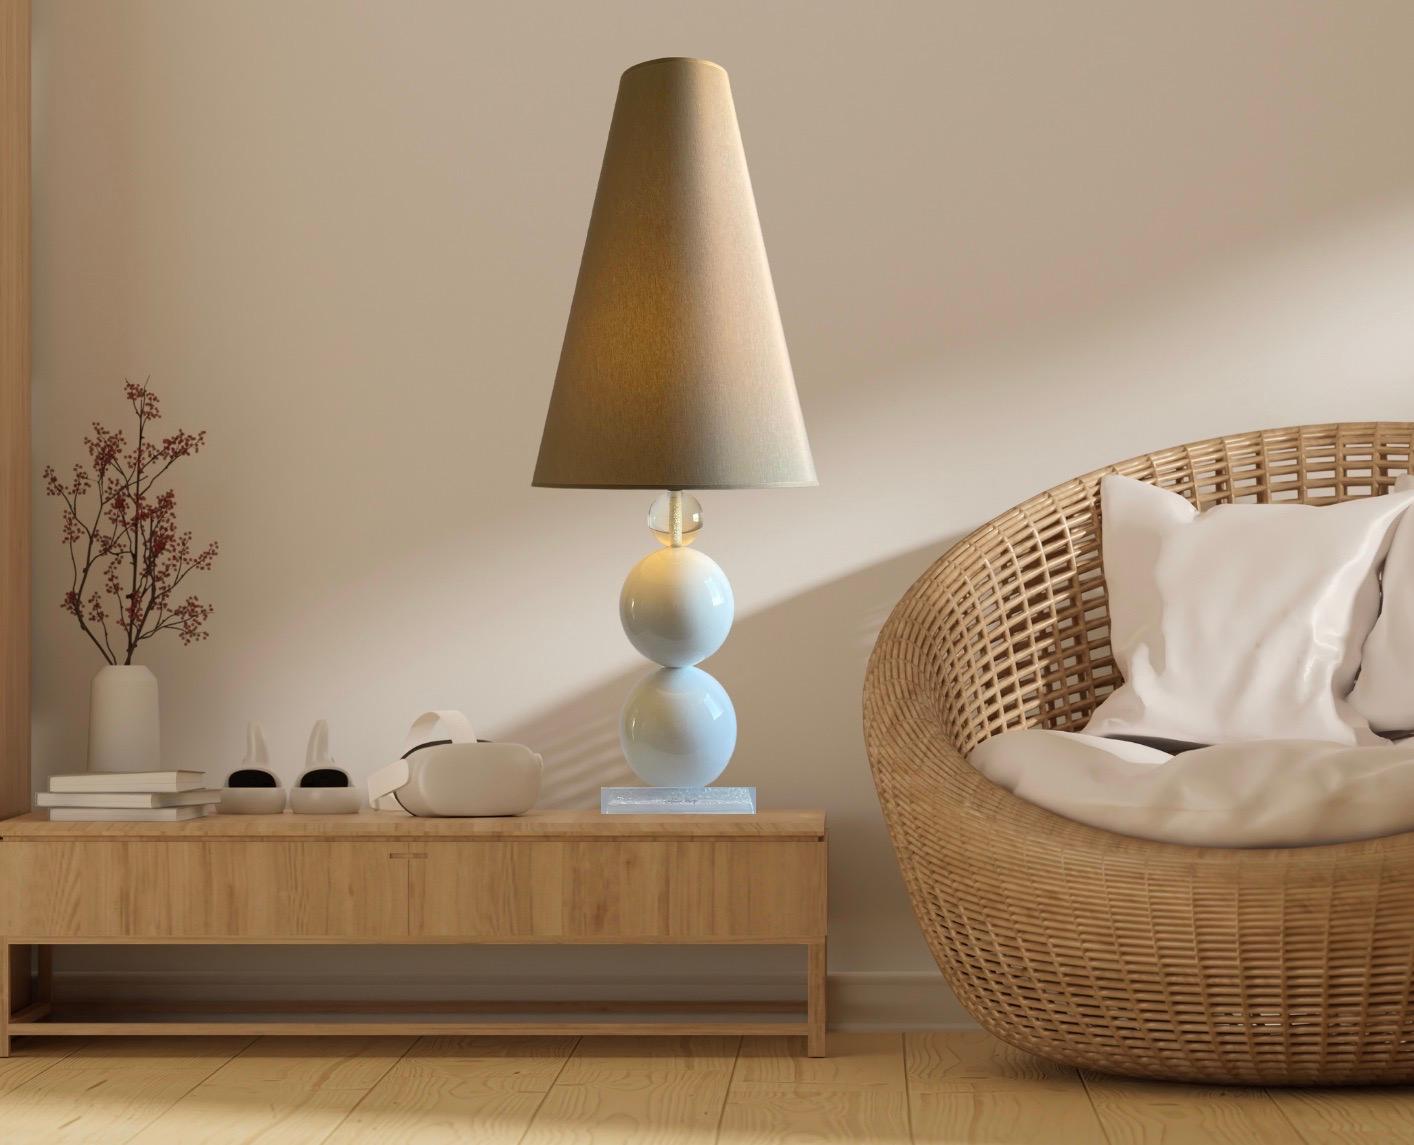 Charlottina Design est une lampe de table élégante et polyvalente, le joyau de votre maison, 100% italienne dans sa conception et sa production. La lampe design Charlottina étonne et fascine, tandis que le jeu de lumière typique de la résine